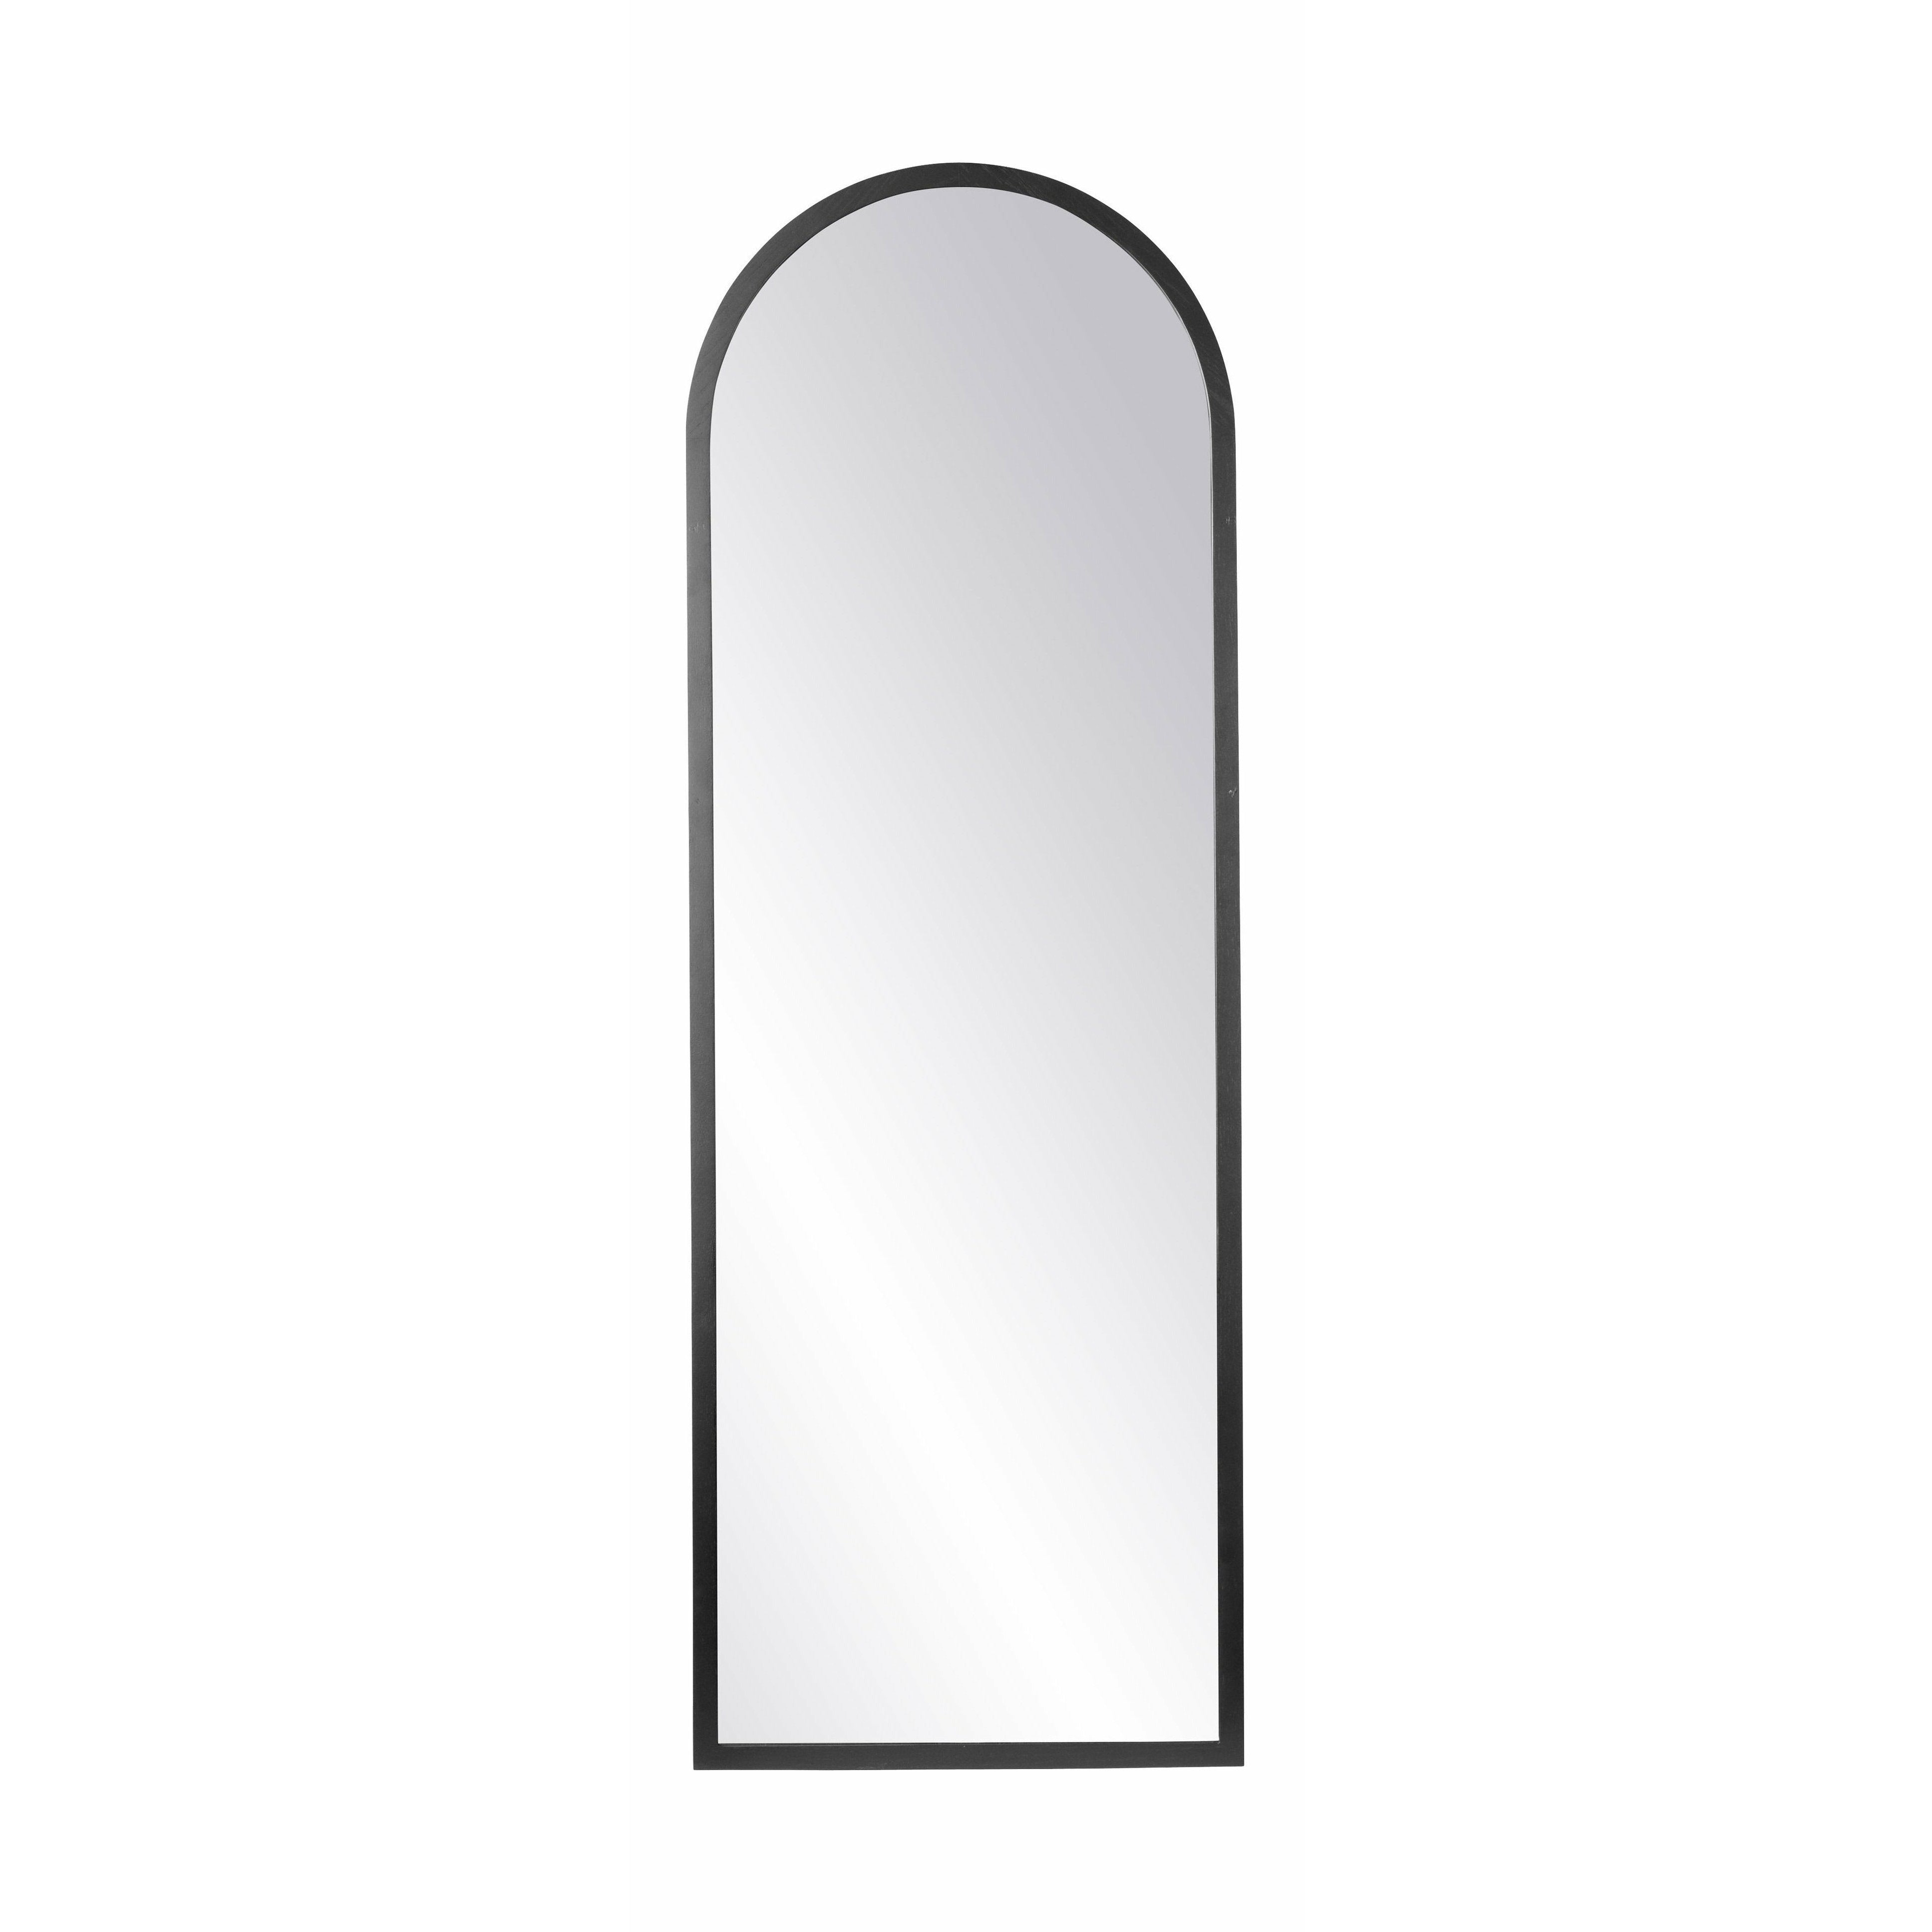 Fdb Møbler I2 Mossø spegel 160x55 cm, svart